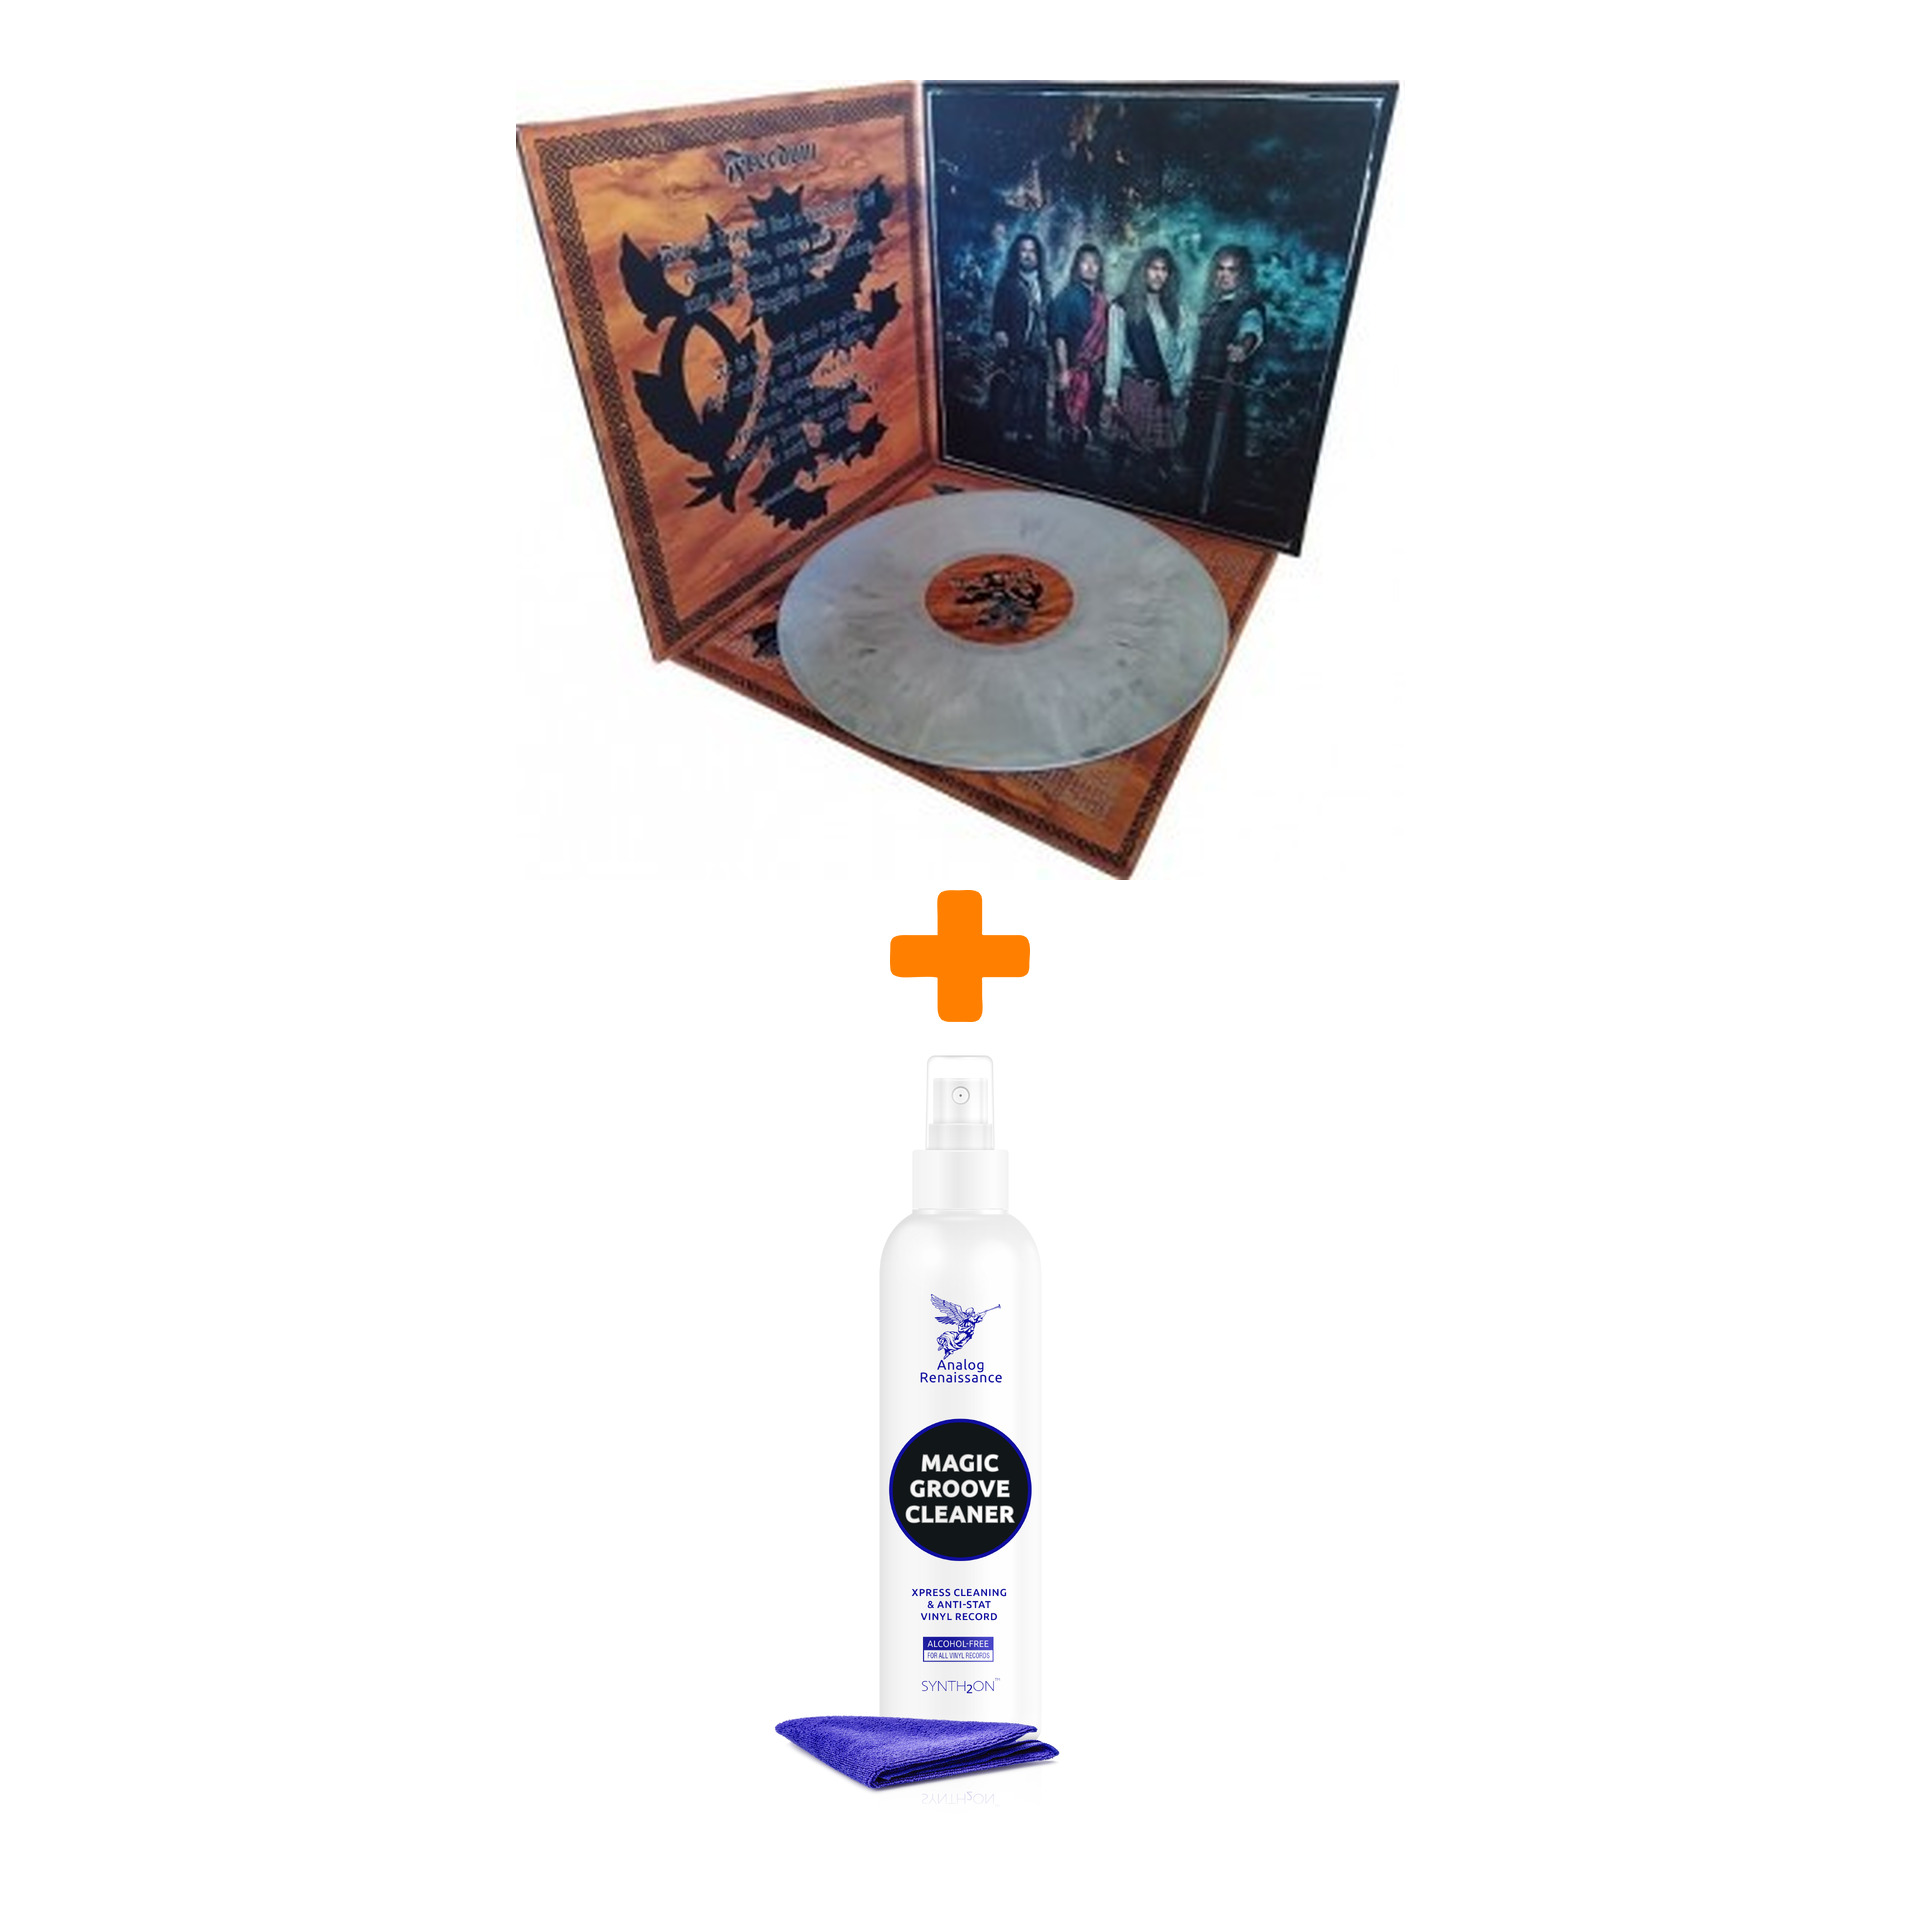 

GRAVE DIGGER Fields Of Blood LP + Спрей для очистки LP с микрофиброй 250мл Набор